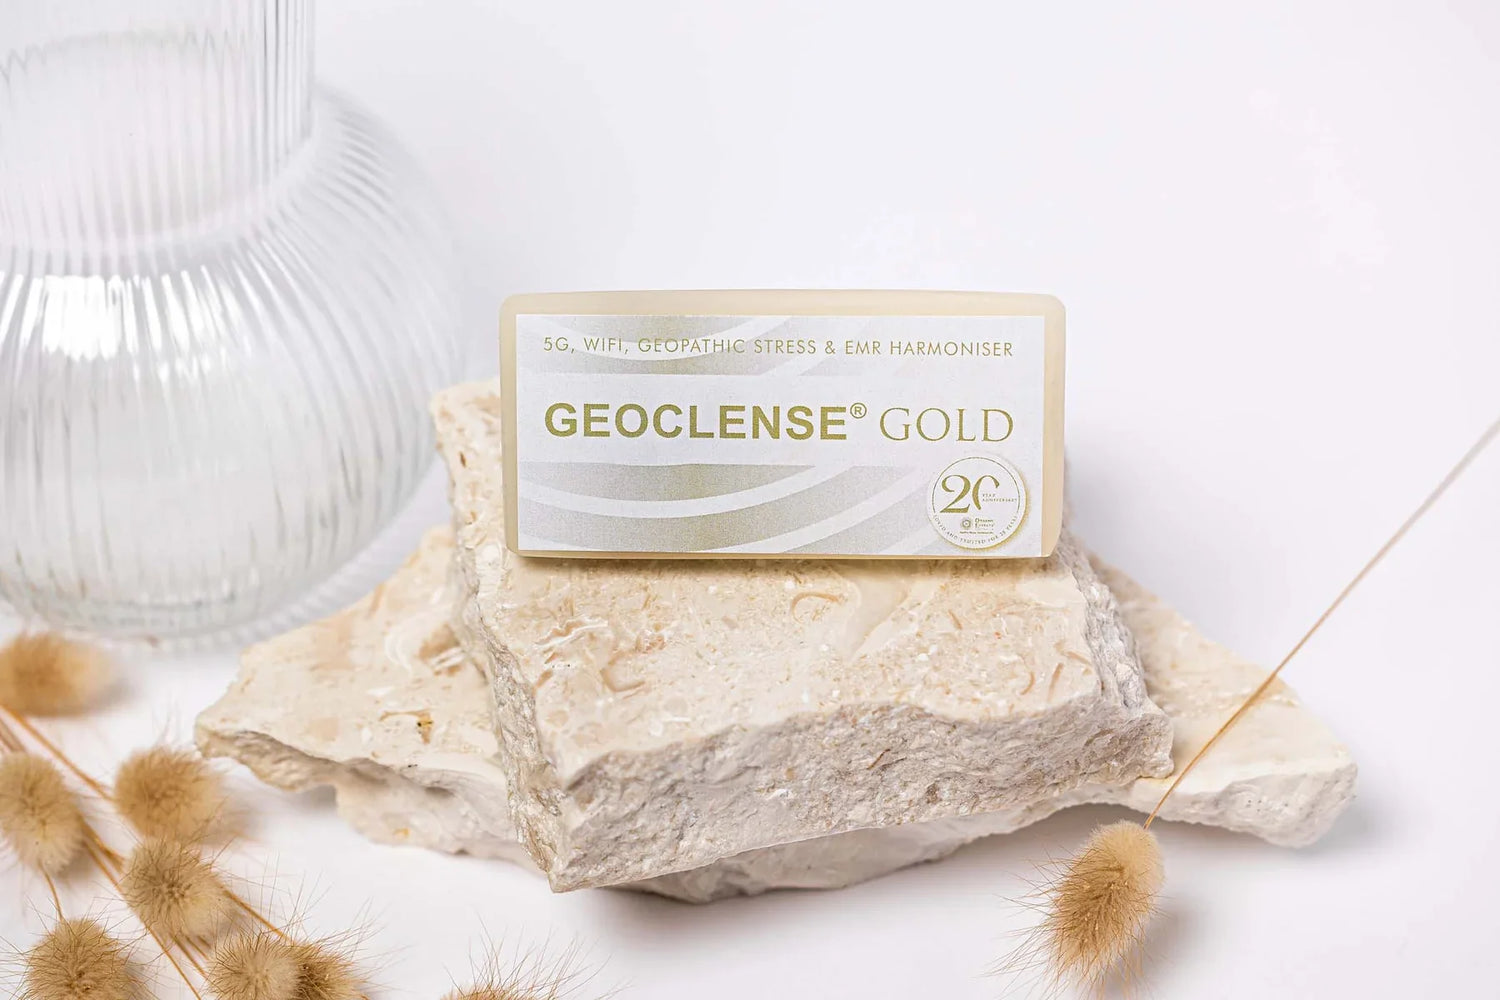 Geoclense-Gold emf free home